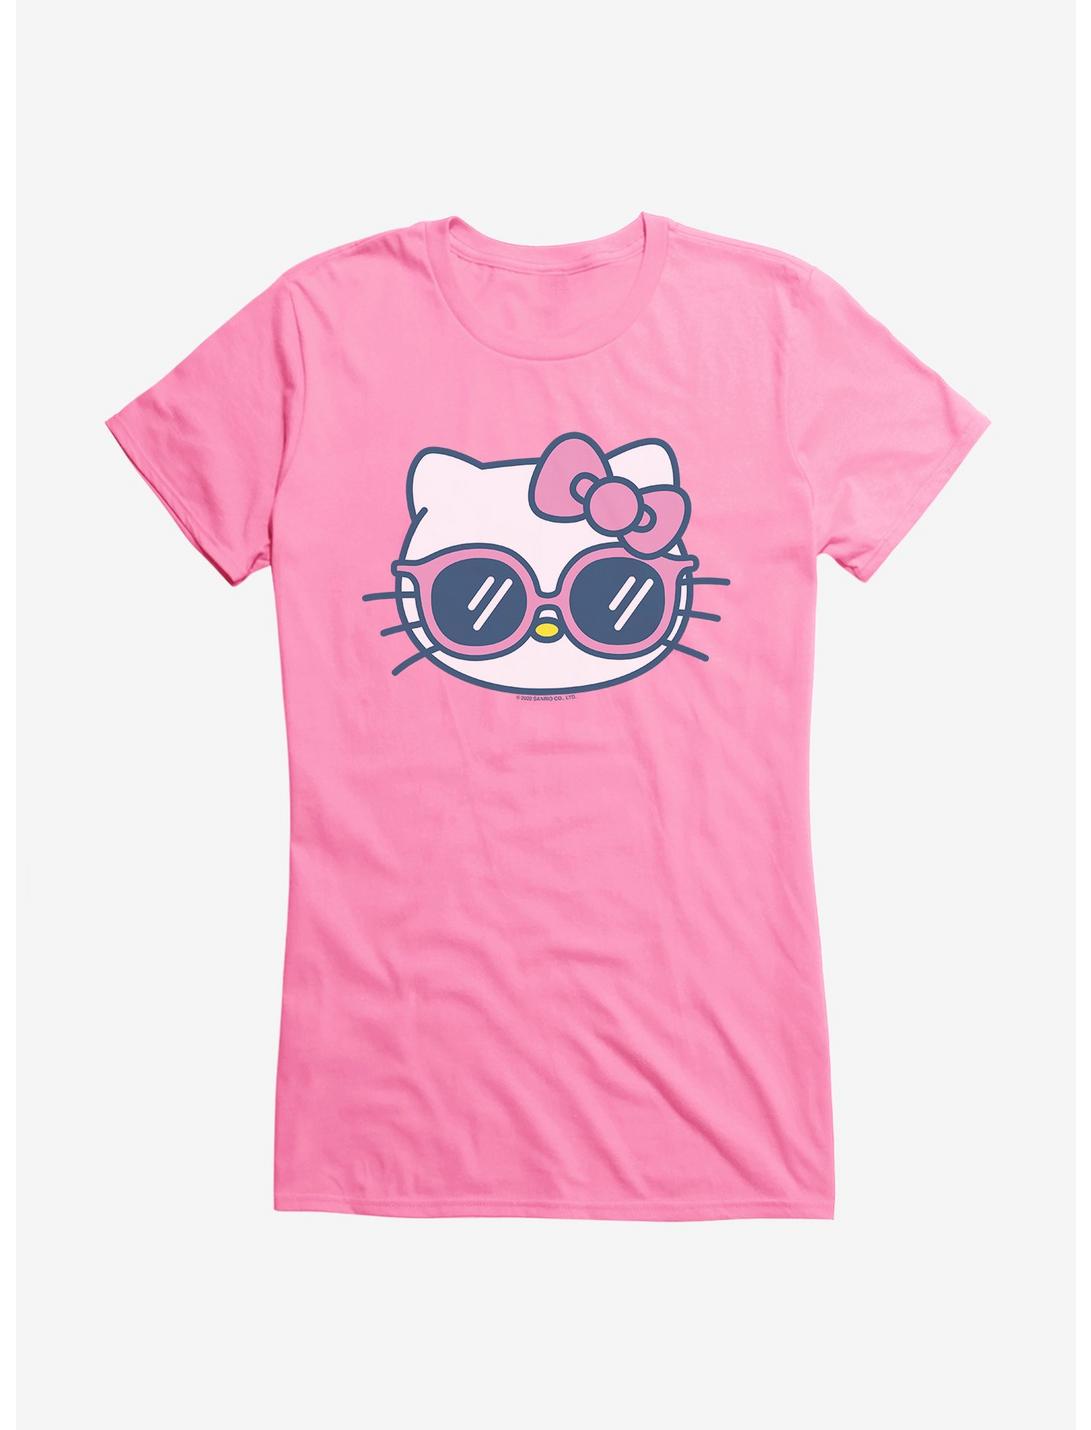 Hello Kitty Kawaii Vacation Sunnies Girls T-Shirt, CHARITY PINK, hi-res